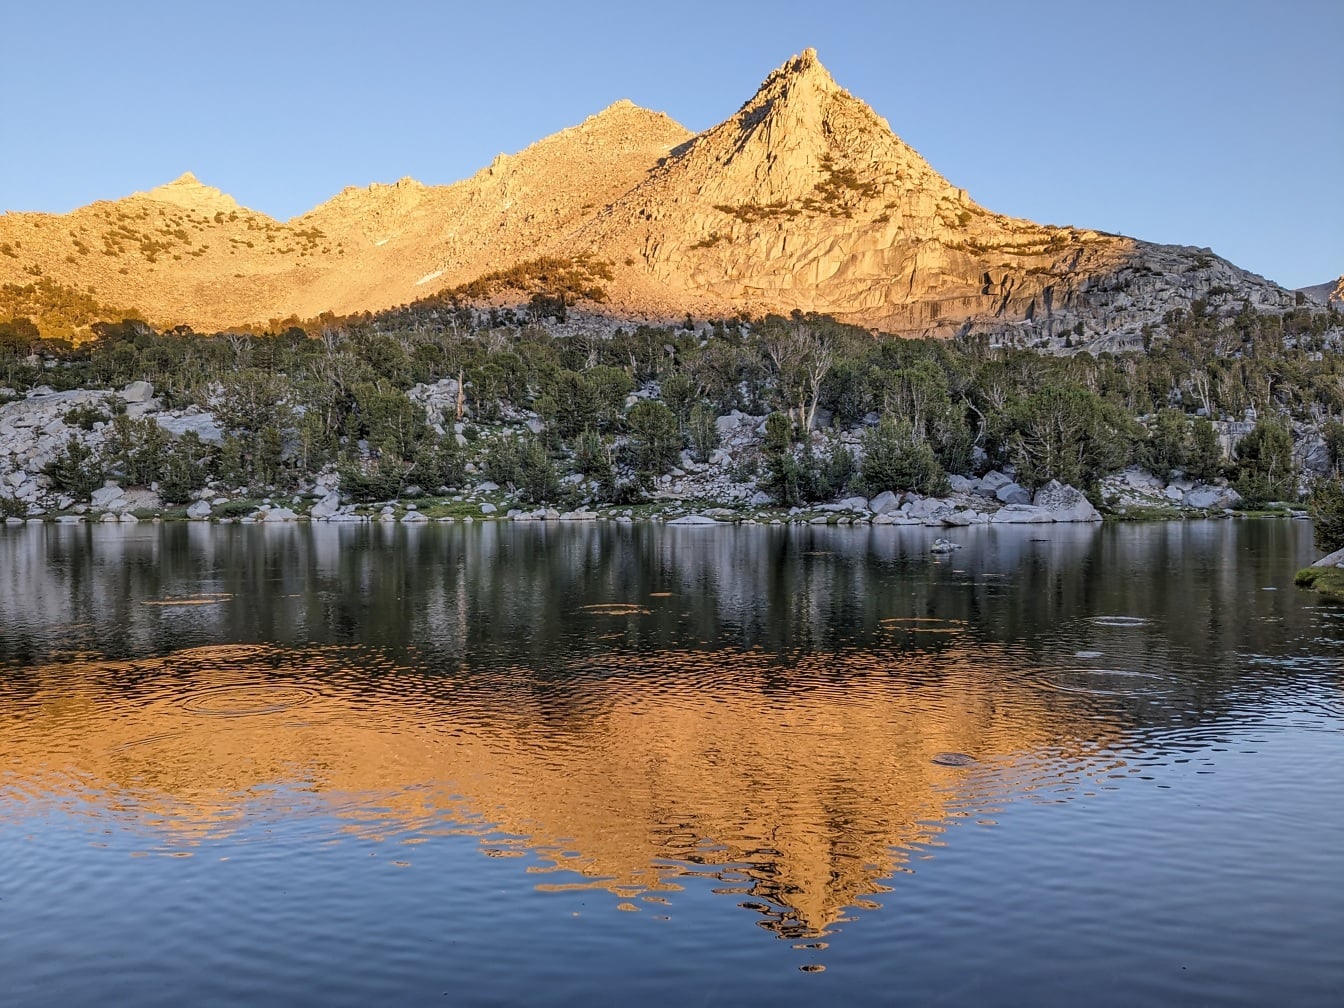 Reflet ensoleillé du sommet de la montagne sur les lacs Kearsarge parc national de Kings Canyon